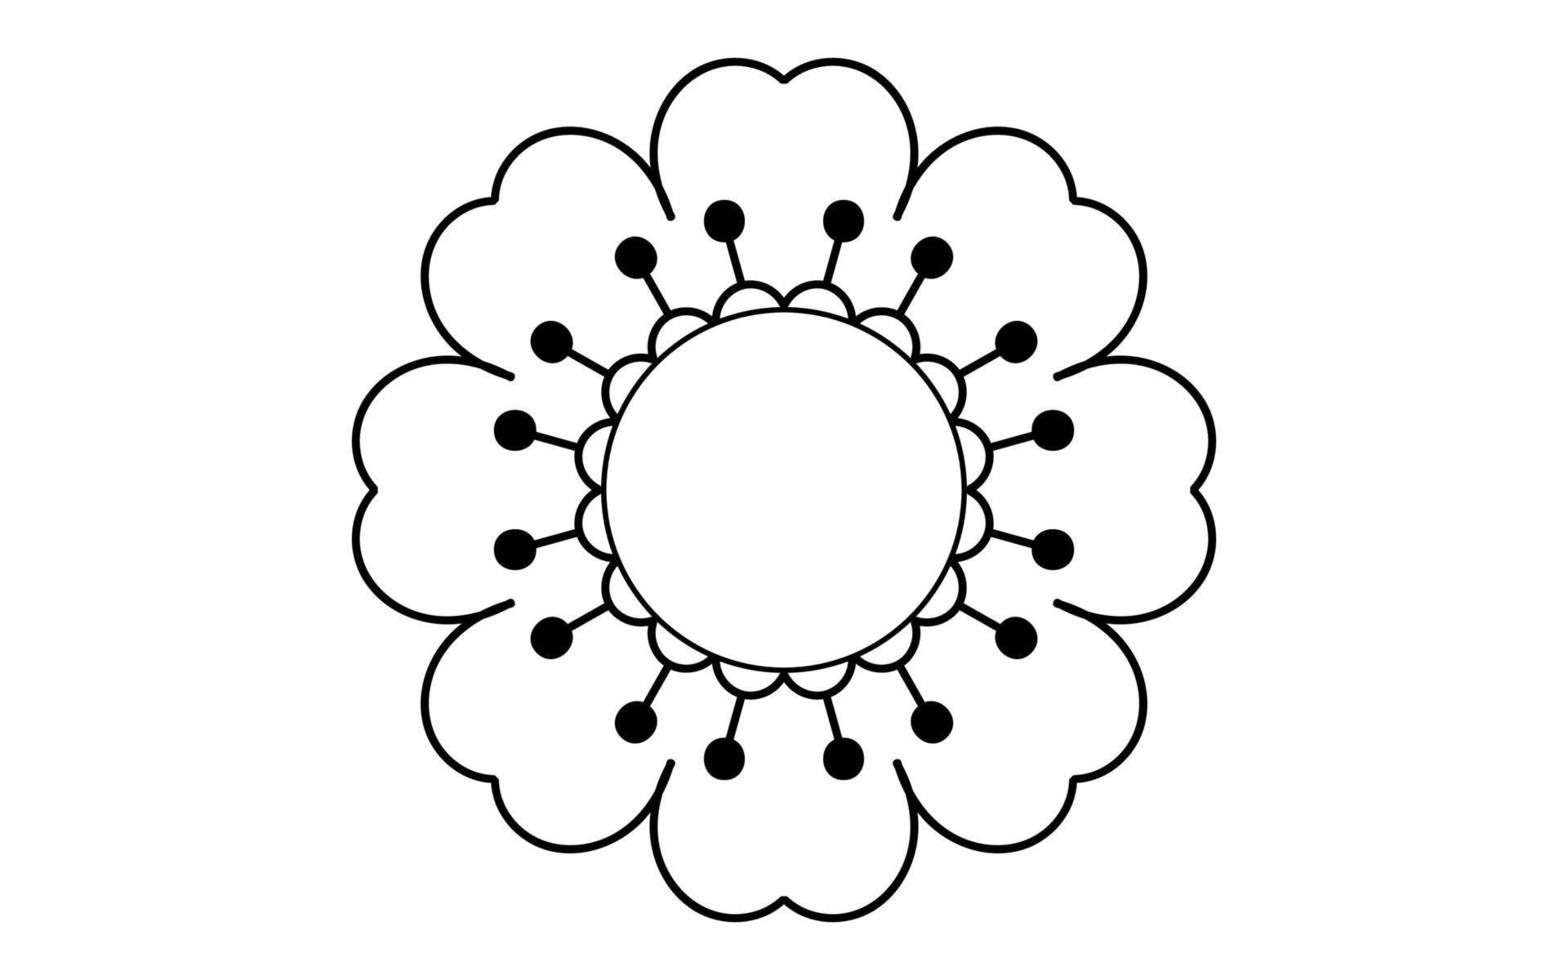 vetor de ícone de flor isolado no fundo branco, ilustração de ícone de flor desenhada à mão, modelo de logotipo floral, ícone natural de símbolo